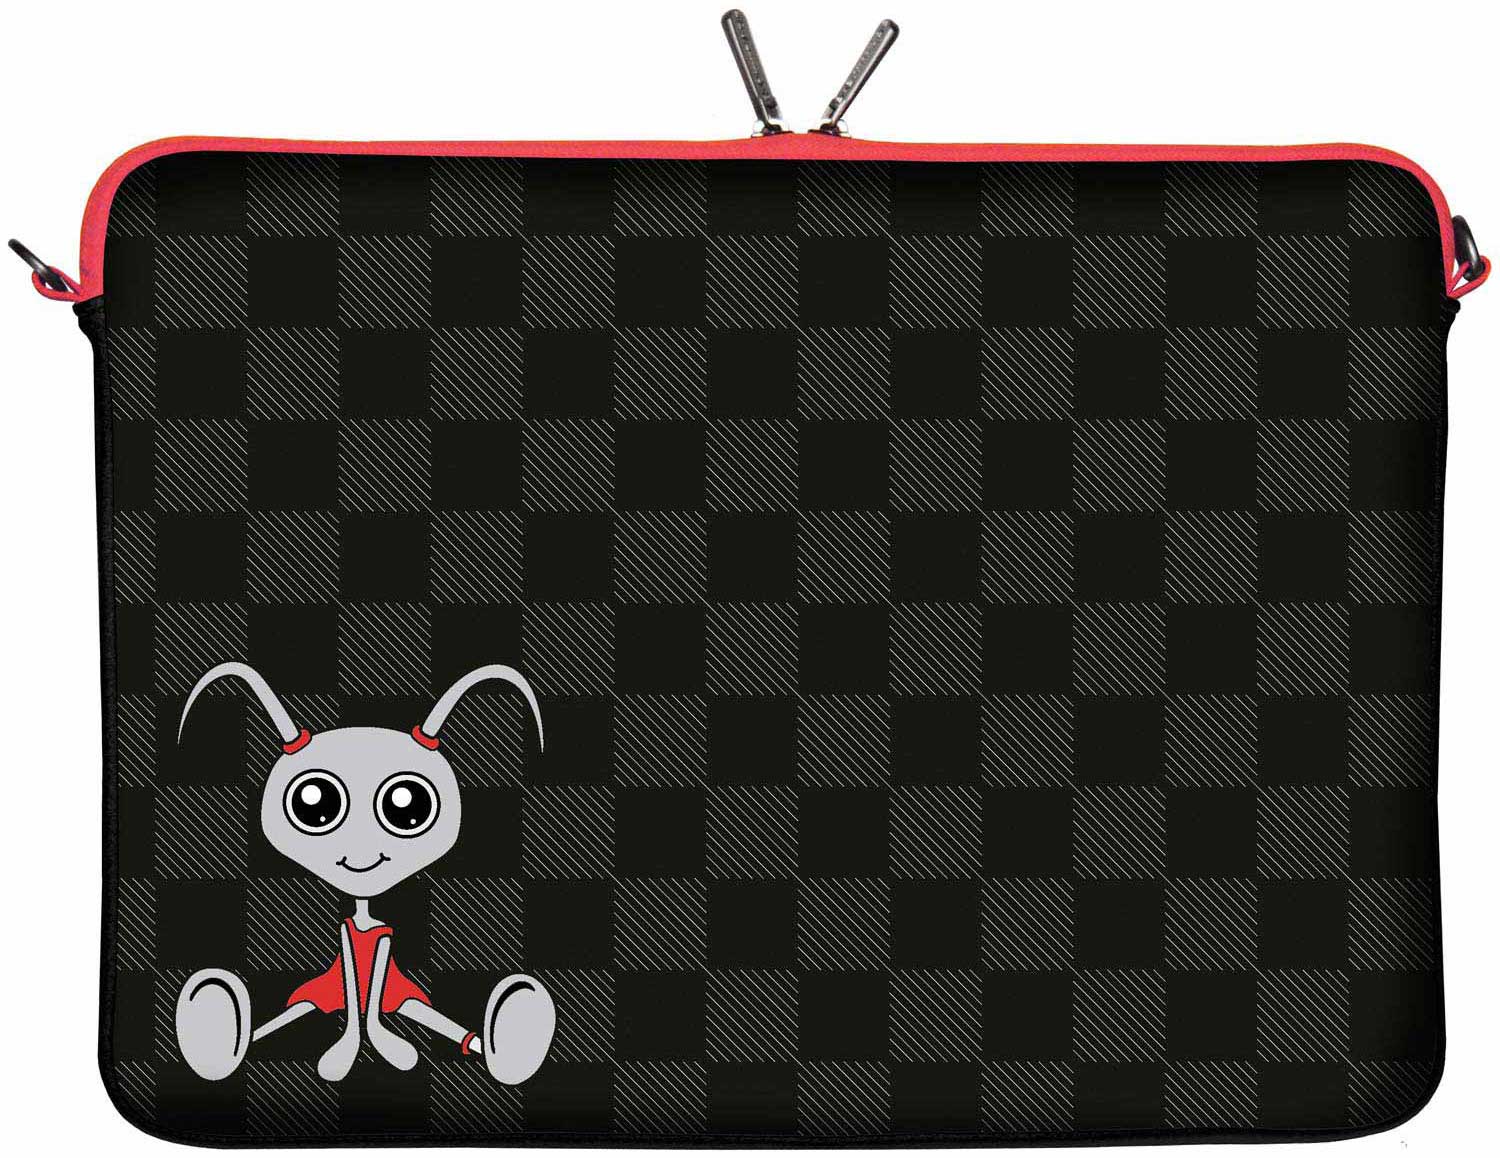 LS160 Filly Designer Tasche für Laptop in schwarz für Tablets, Laptops und Macbooks